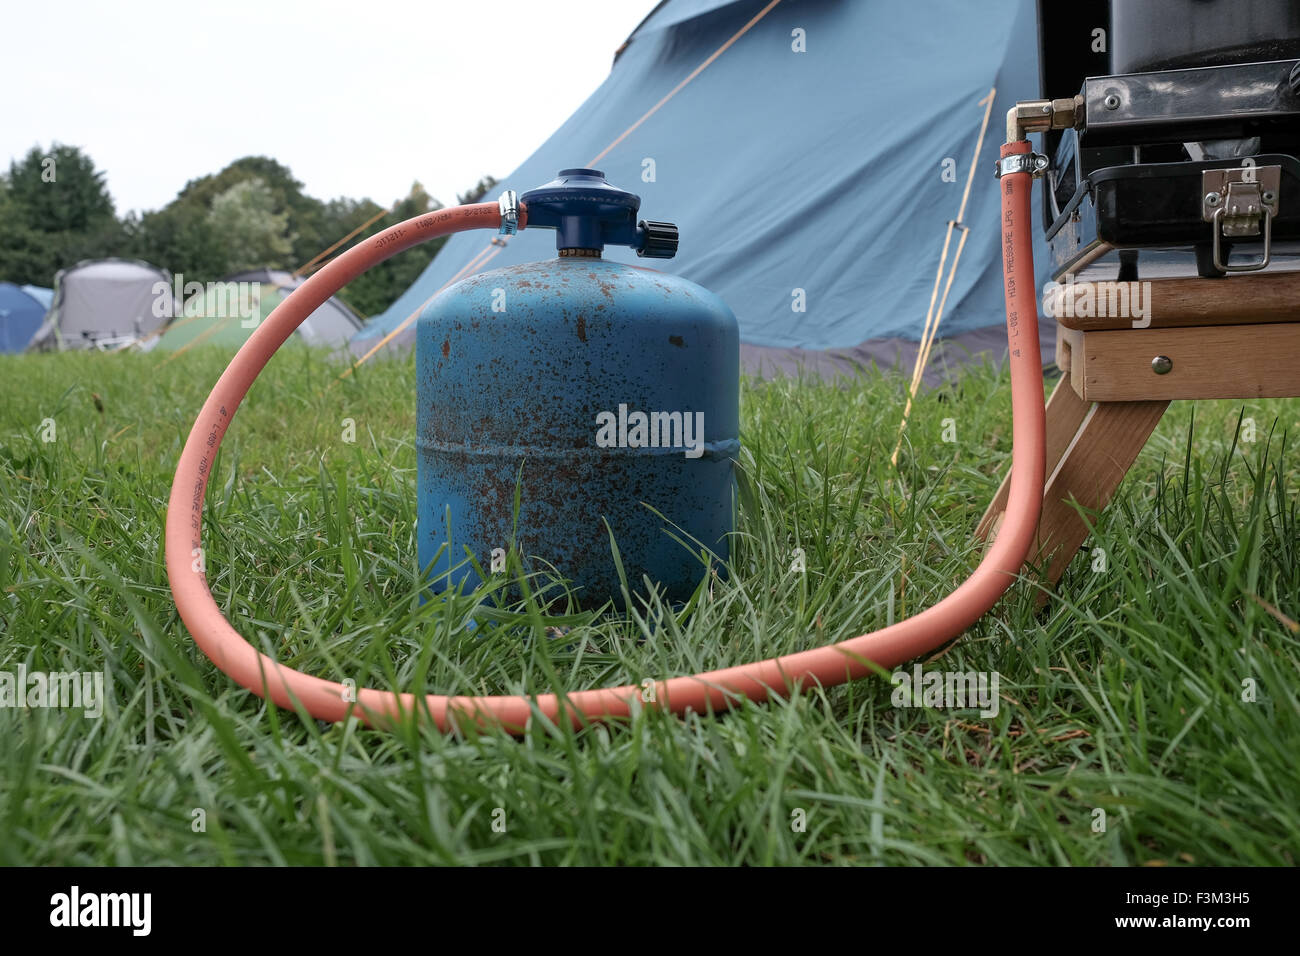 Bouteille de gaz utilisé tout en camping pour cuisinière Banque D'Images